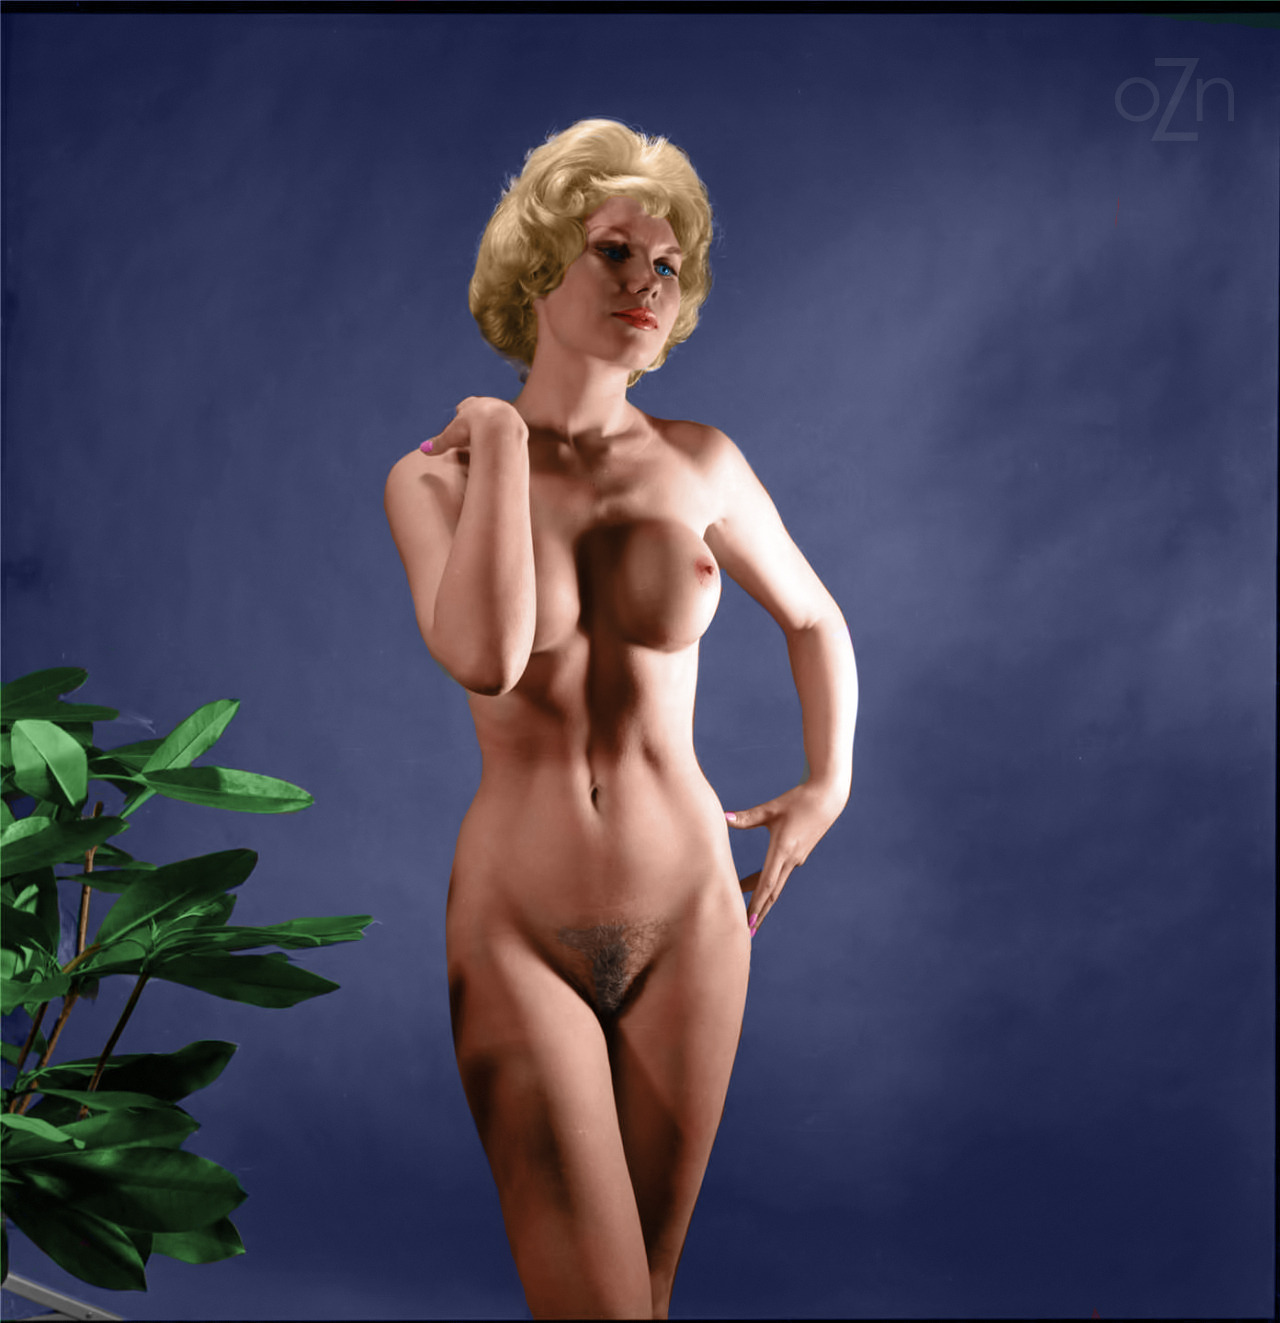 Vintage 60s nudes porn